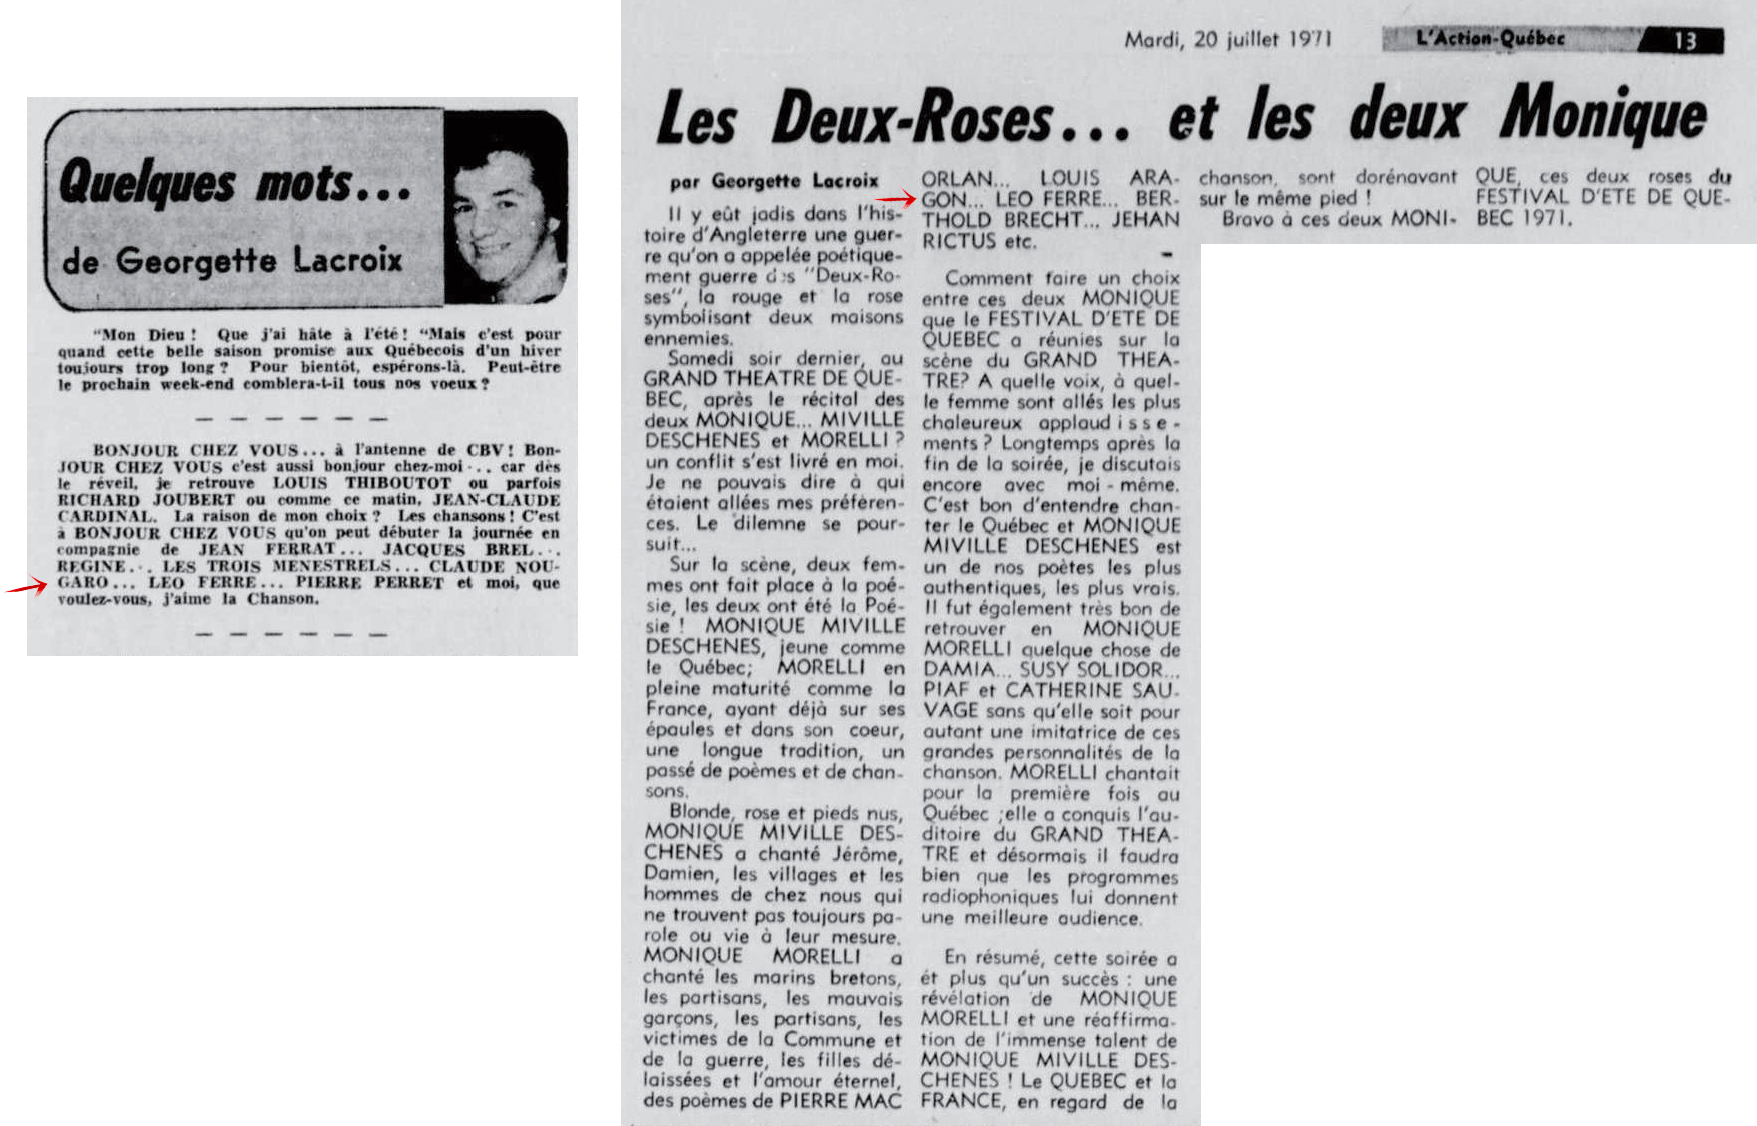 Léo Ferré - L'Action, 1962-1971, mardi 20 juillet 1971